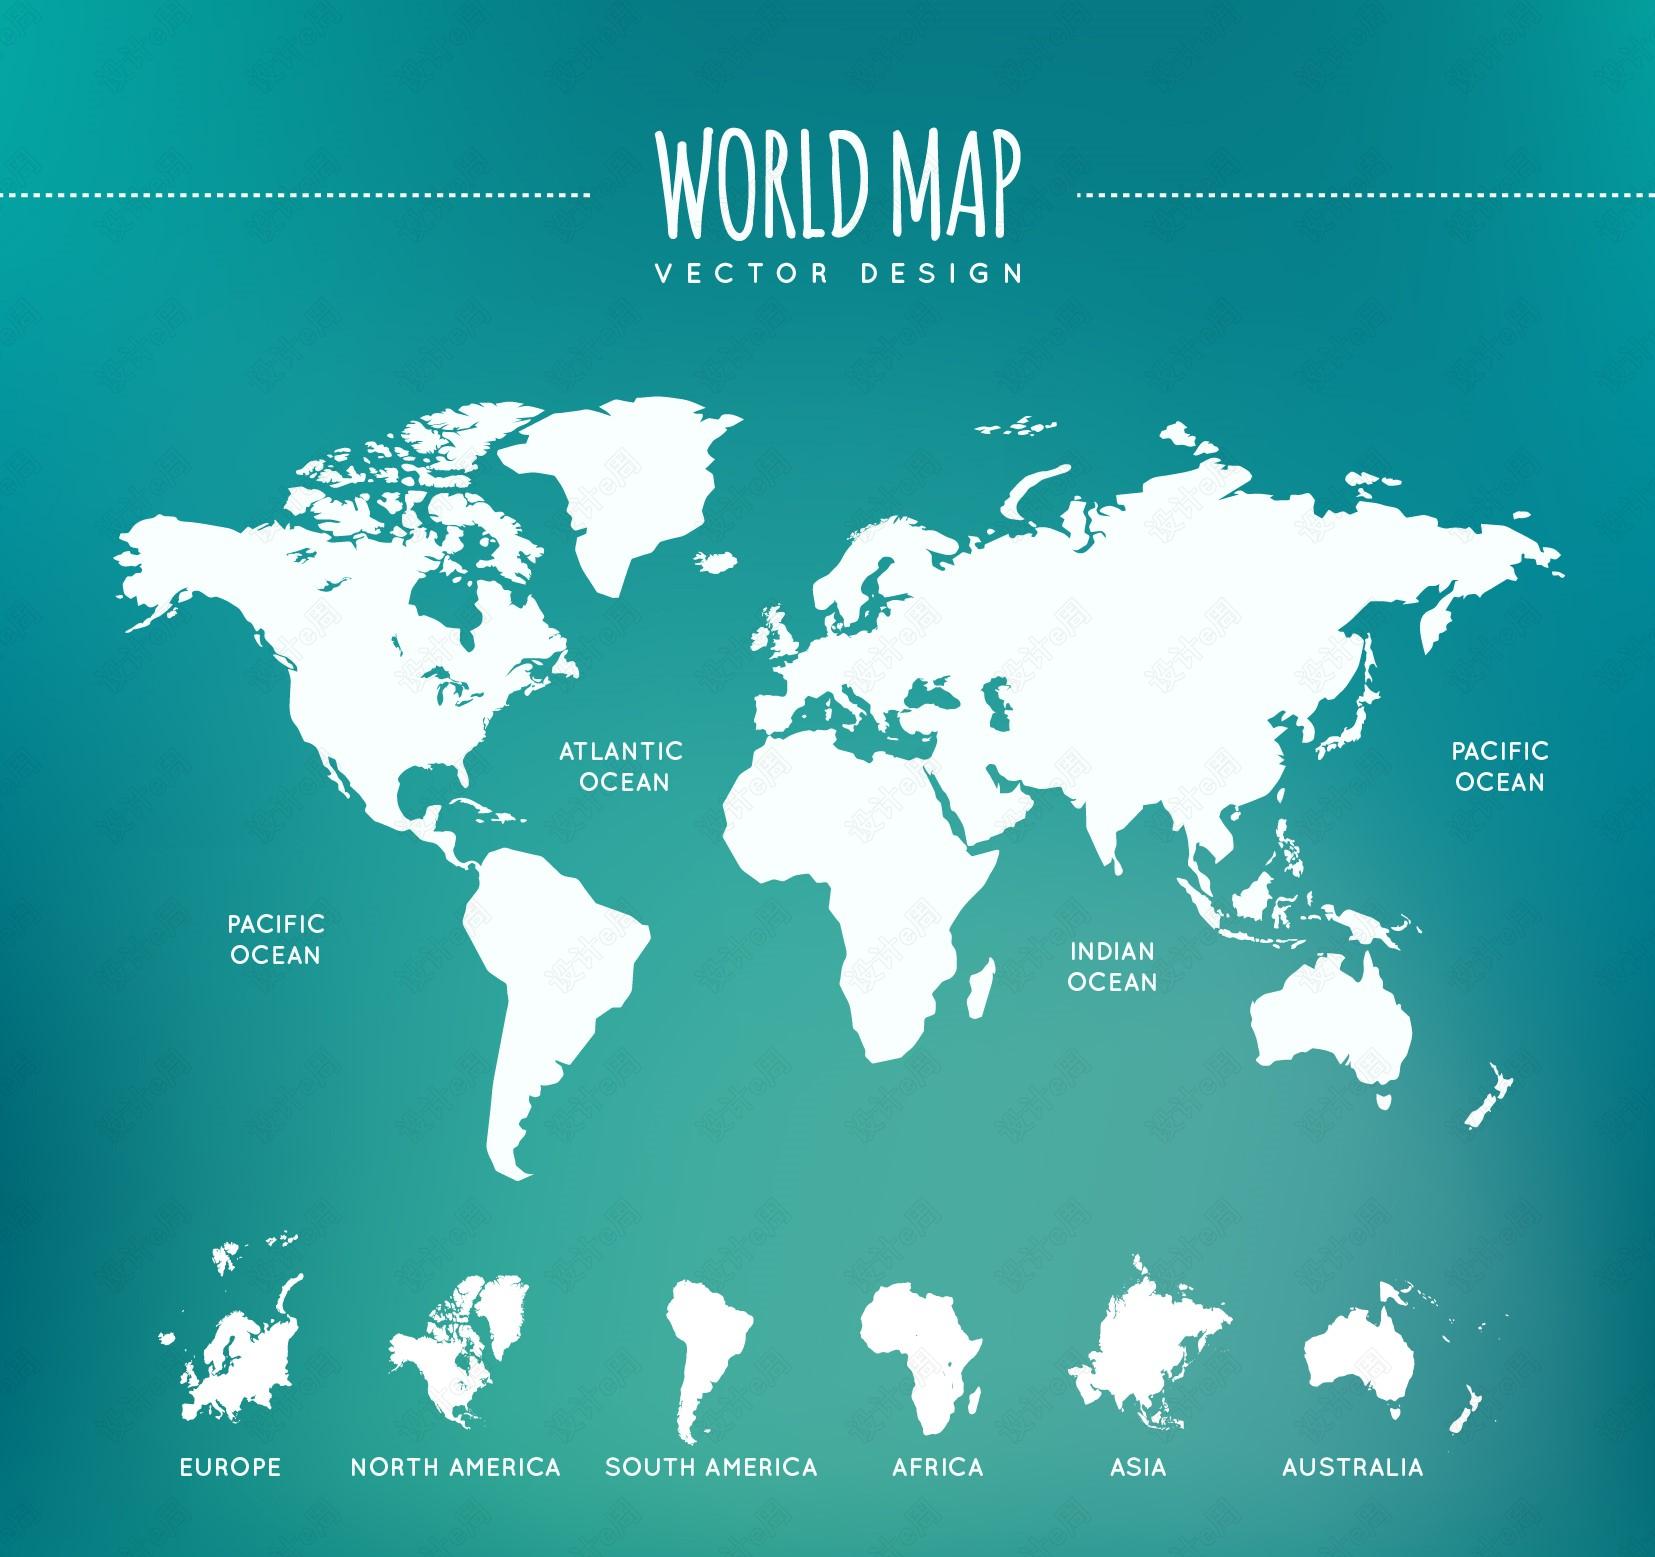 世界地图高清版大图_世界地图全图高清版_世界地图查询